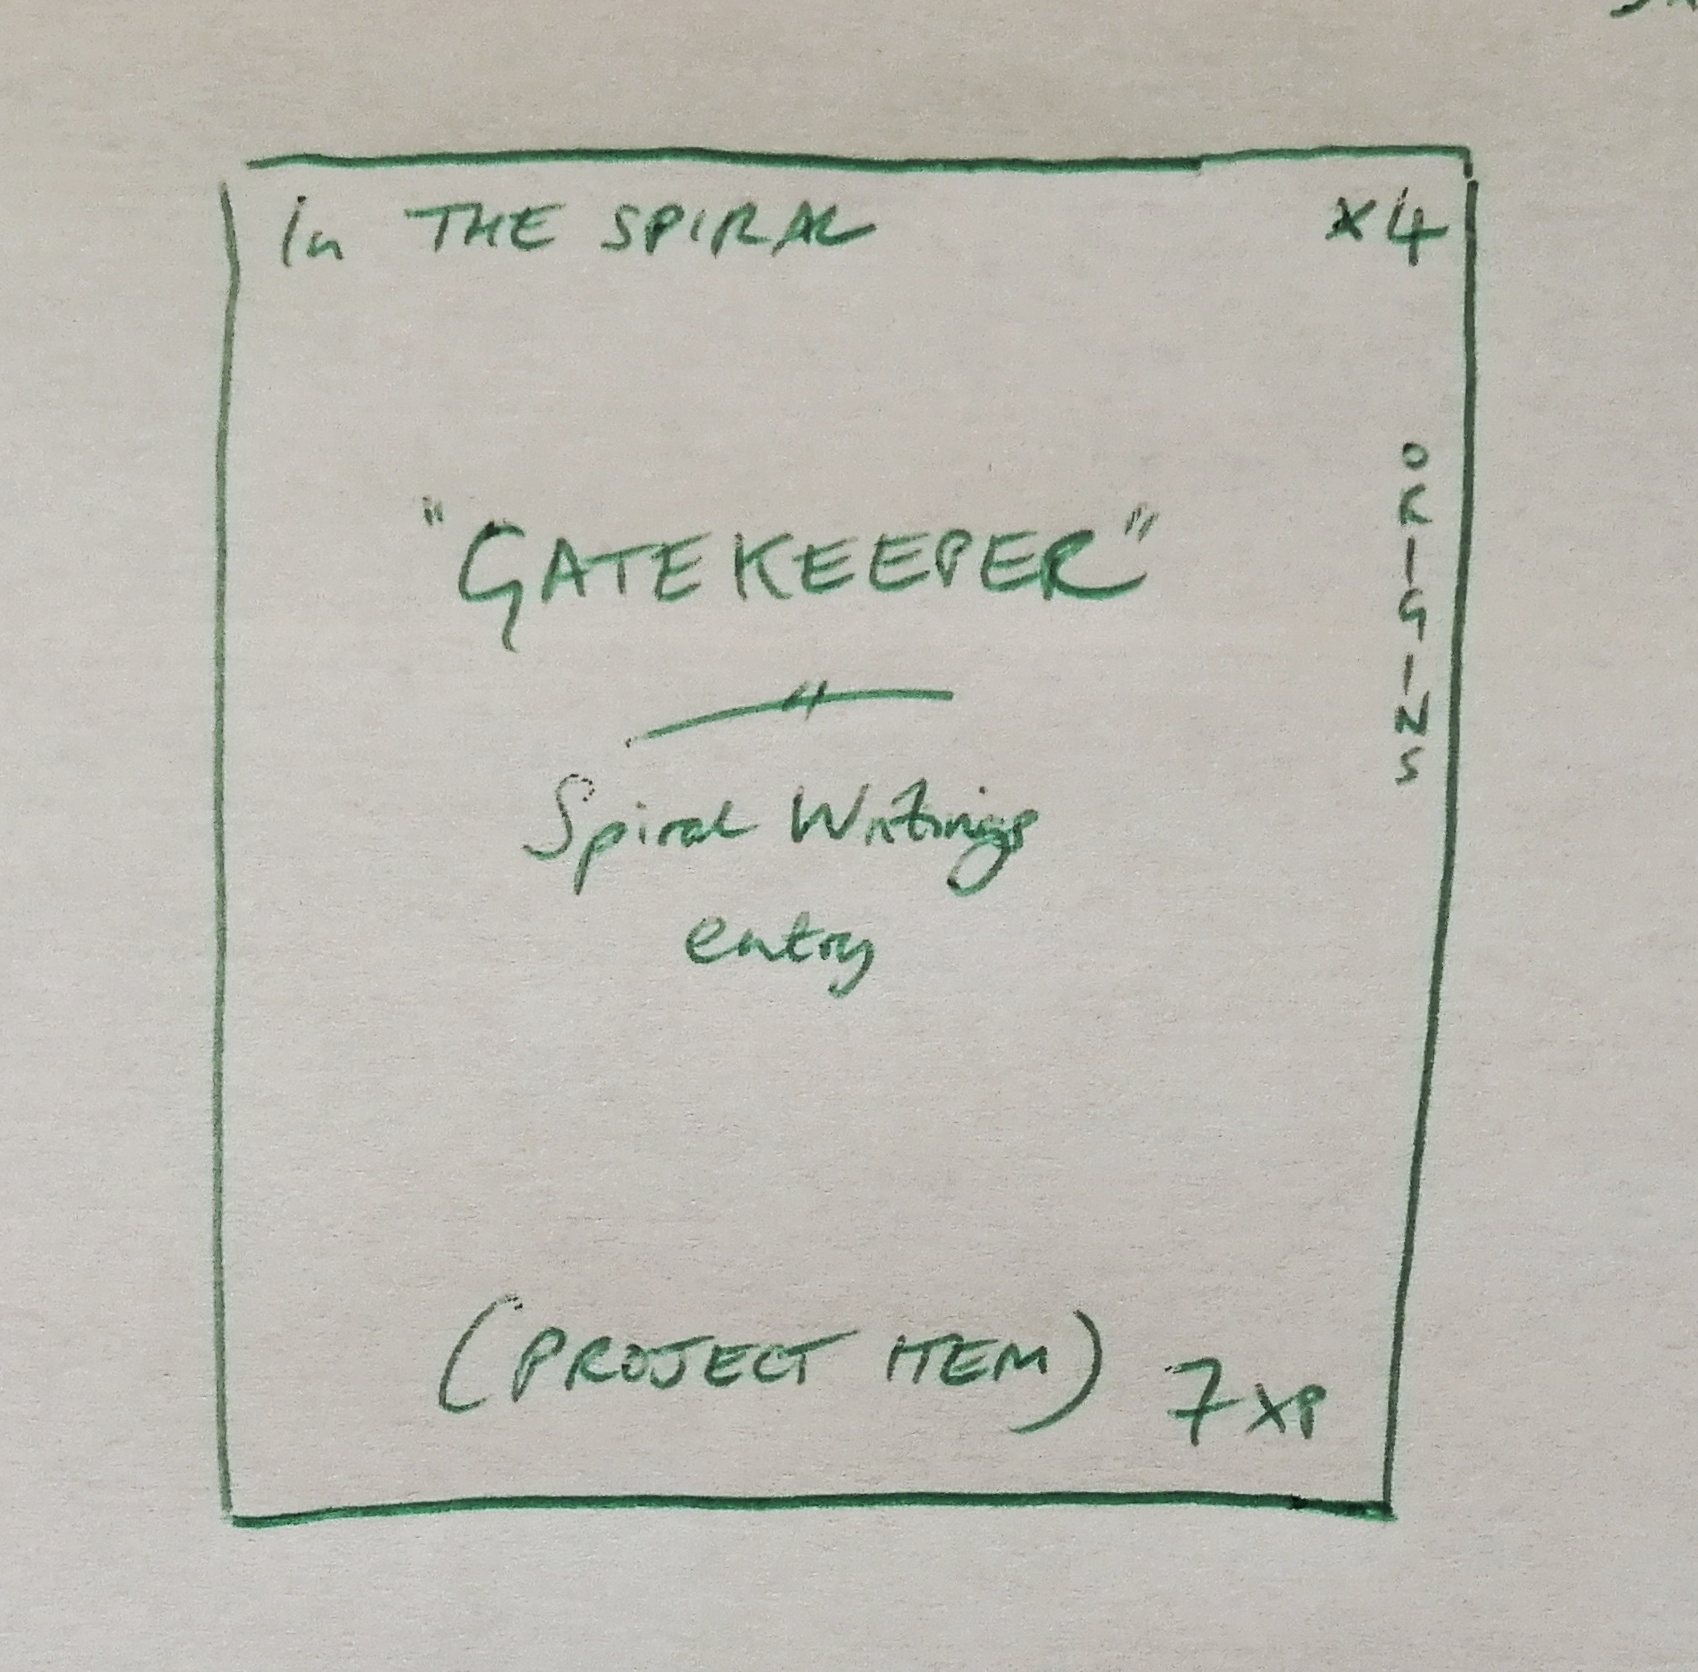 In The Spiral: 'Gatekeeper'